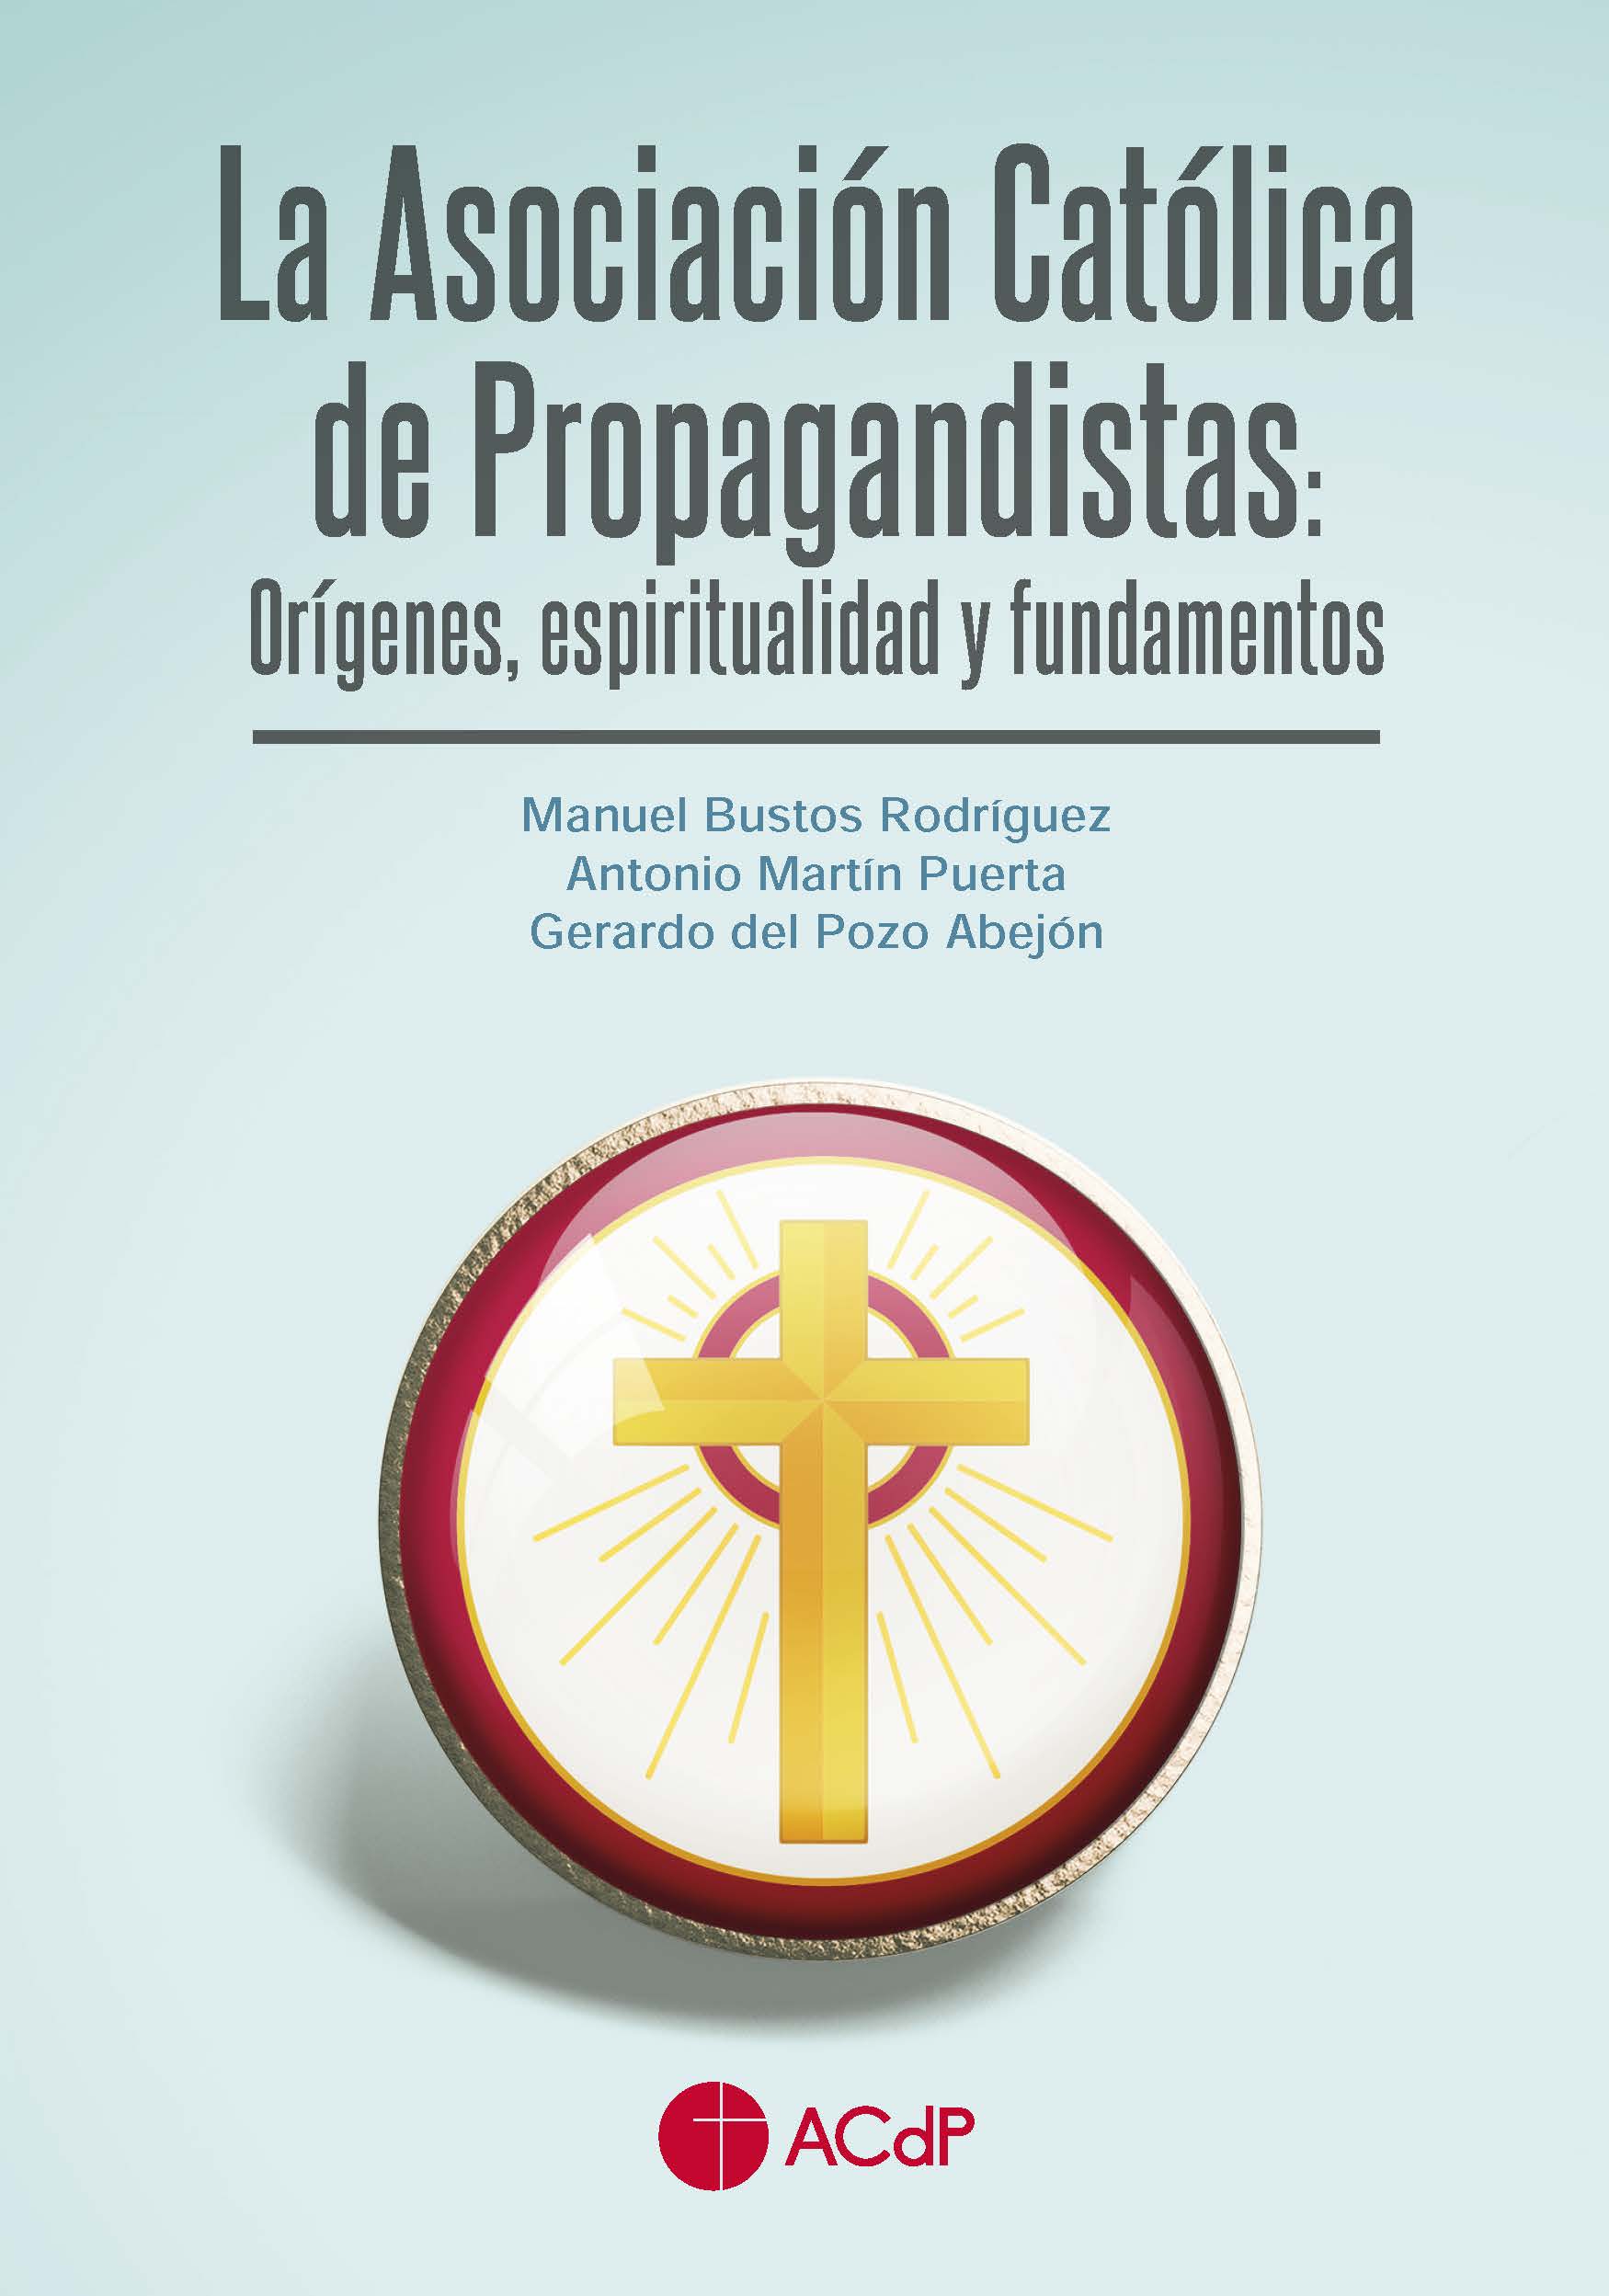 Imagen de portada del libro La Asociación Católica de Propagandistas